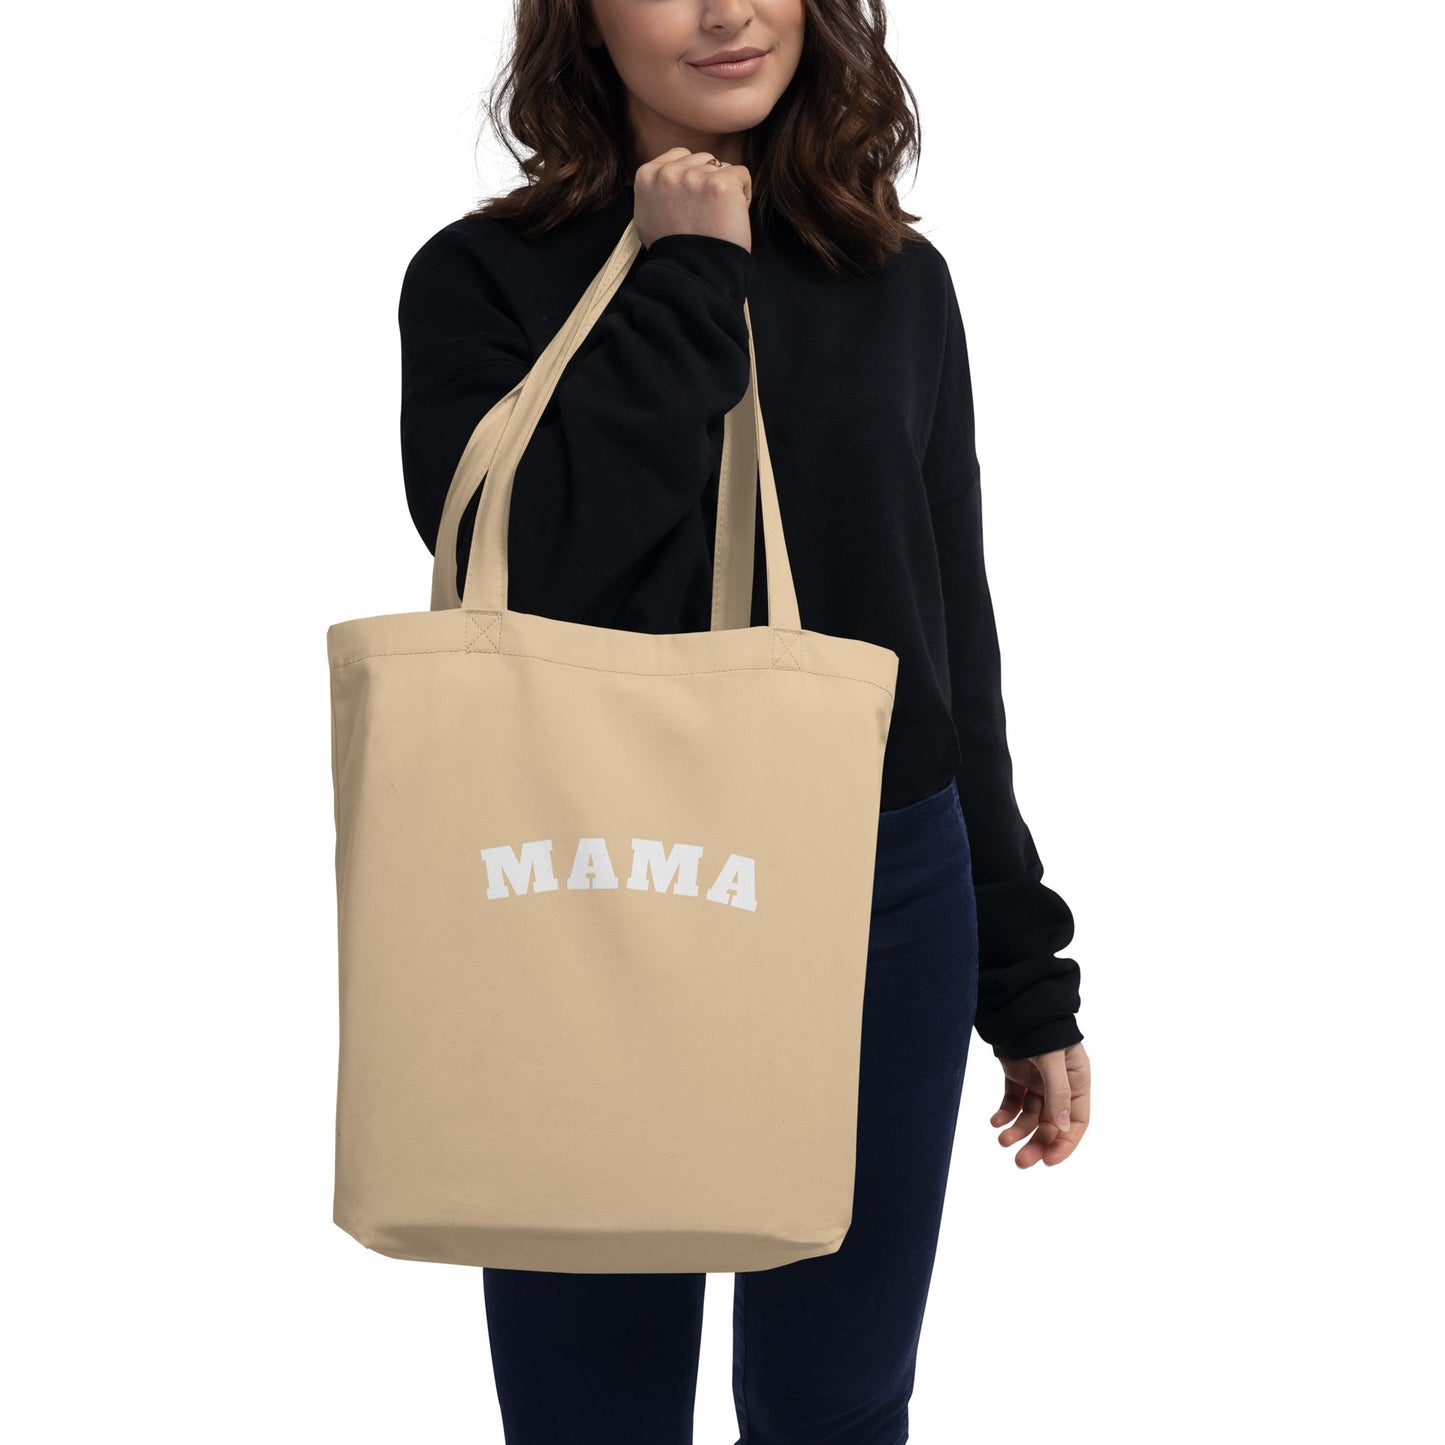 Mama Eco Tote Bag